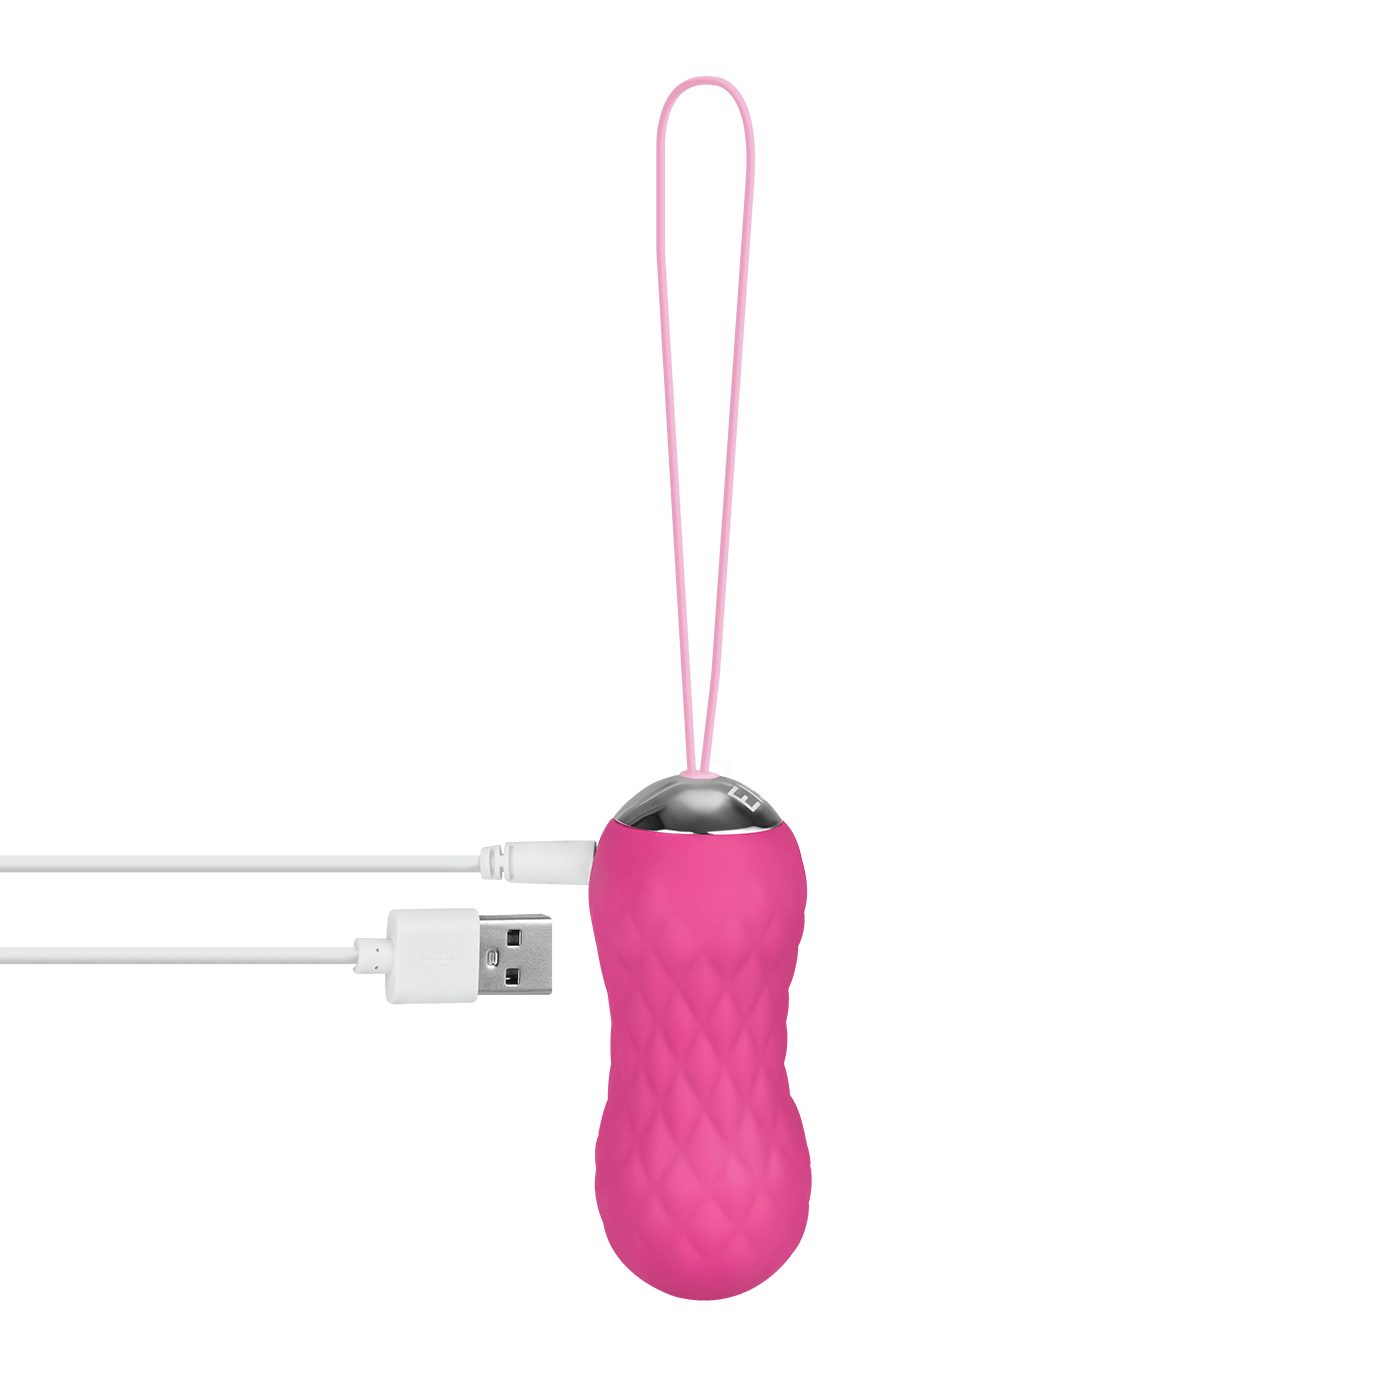 EIS Liebeskugeln 8,7cm", mit EIS Fernbedienung, pink Vibro-Ei, Silikon, ABS-Kunststoff "Rotierendes wasserdicht